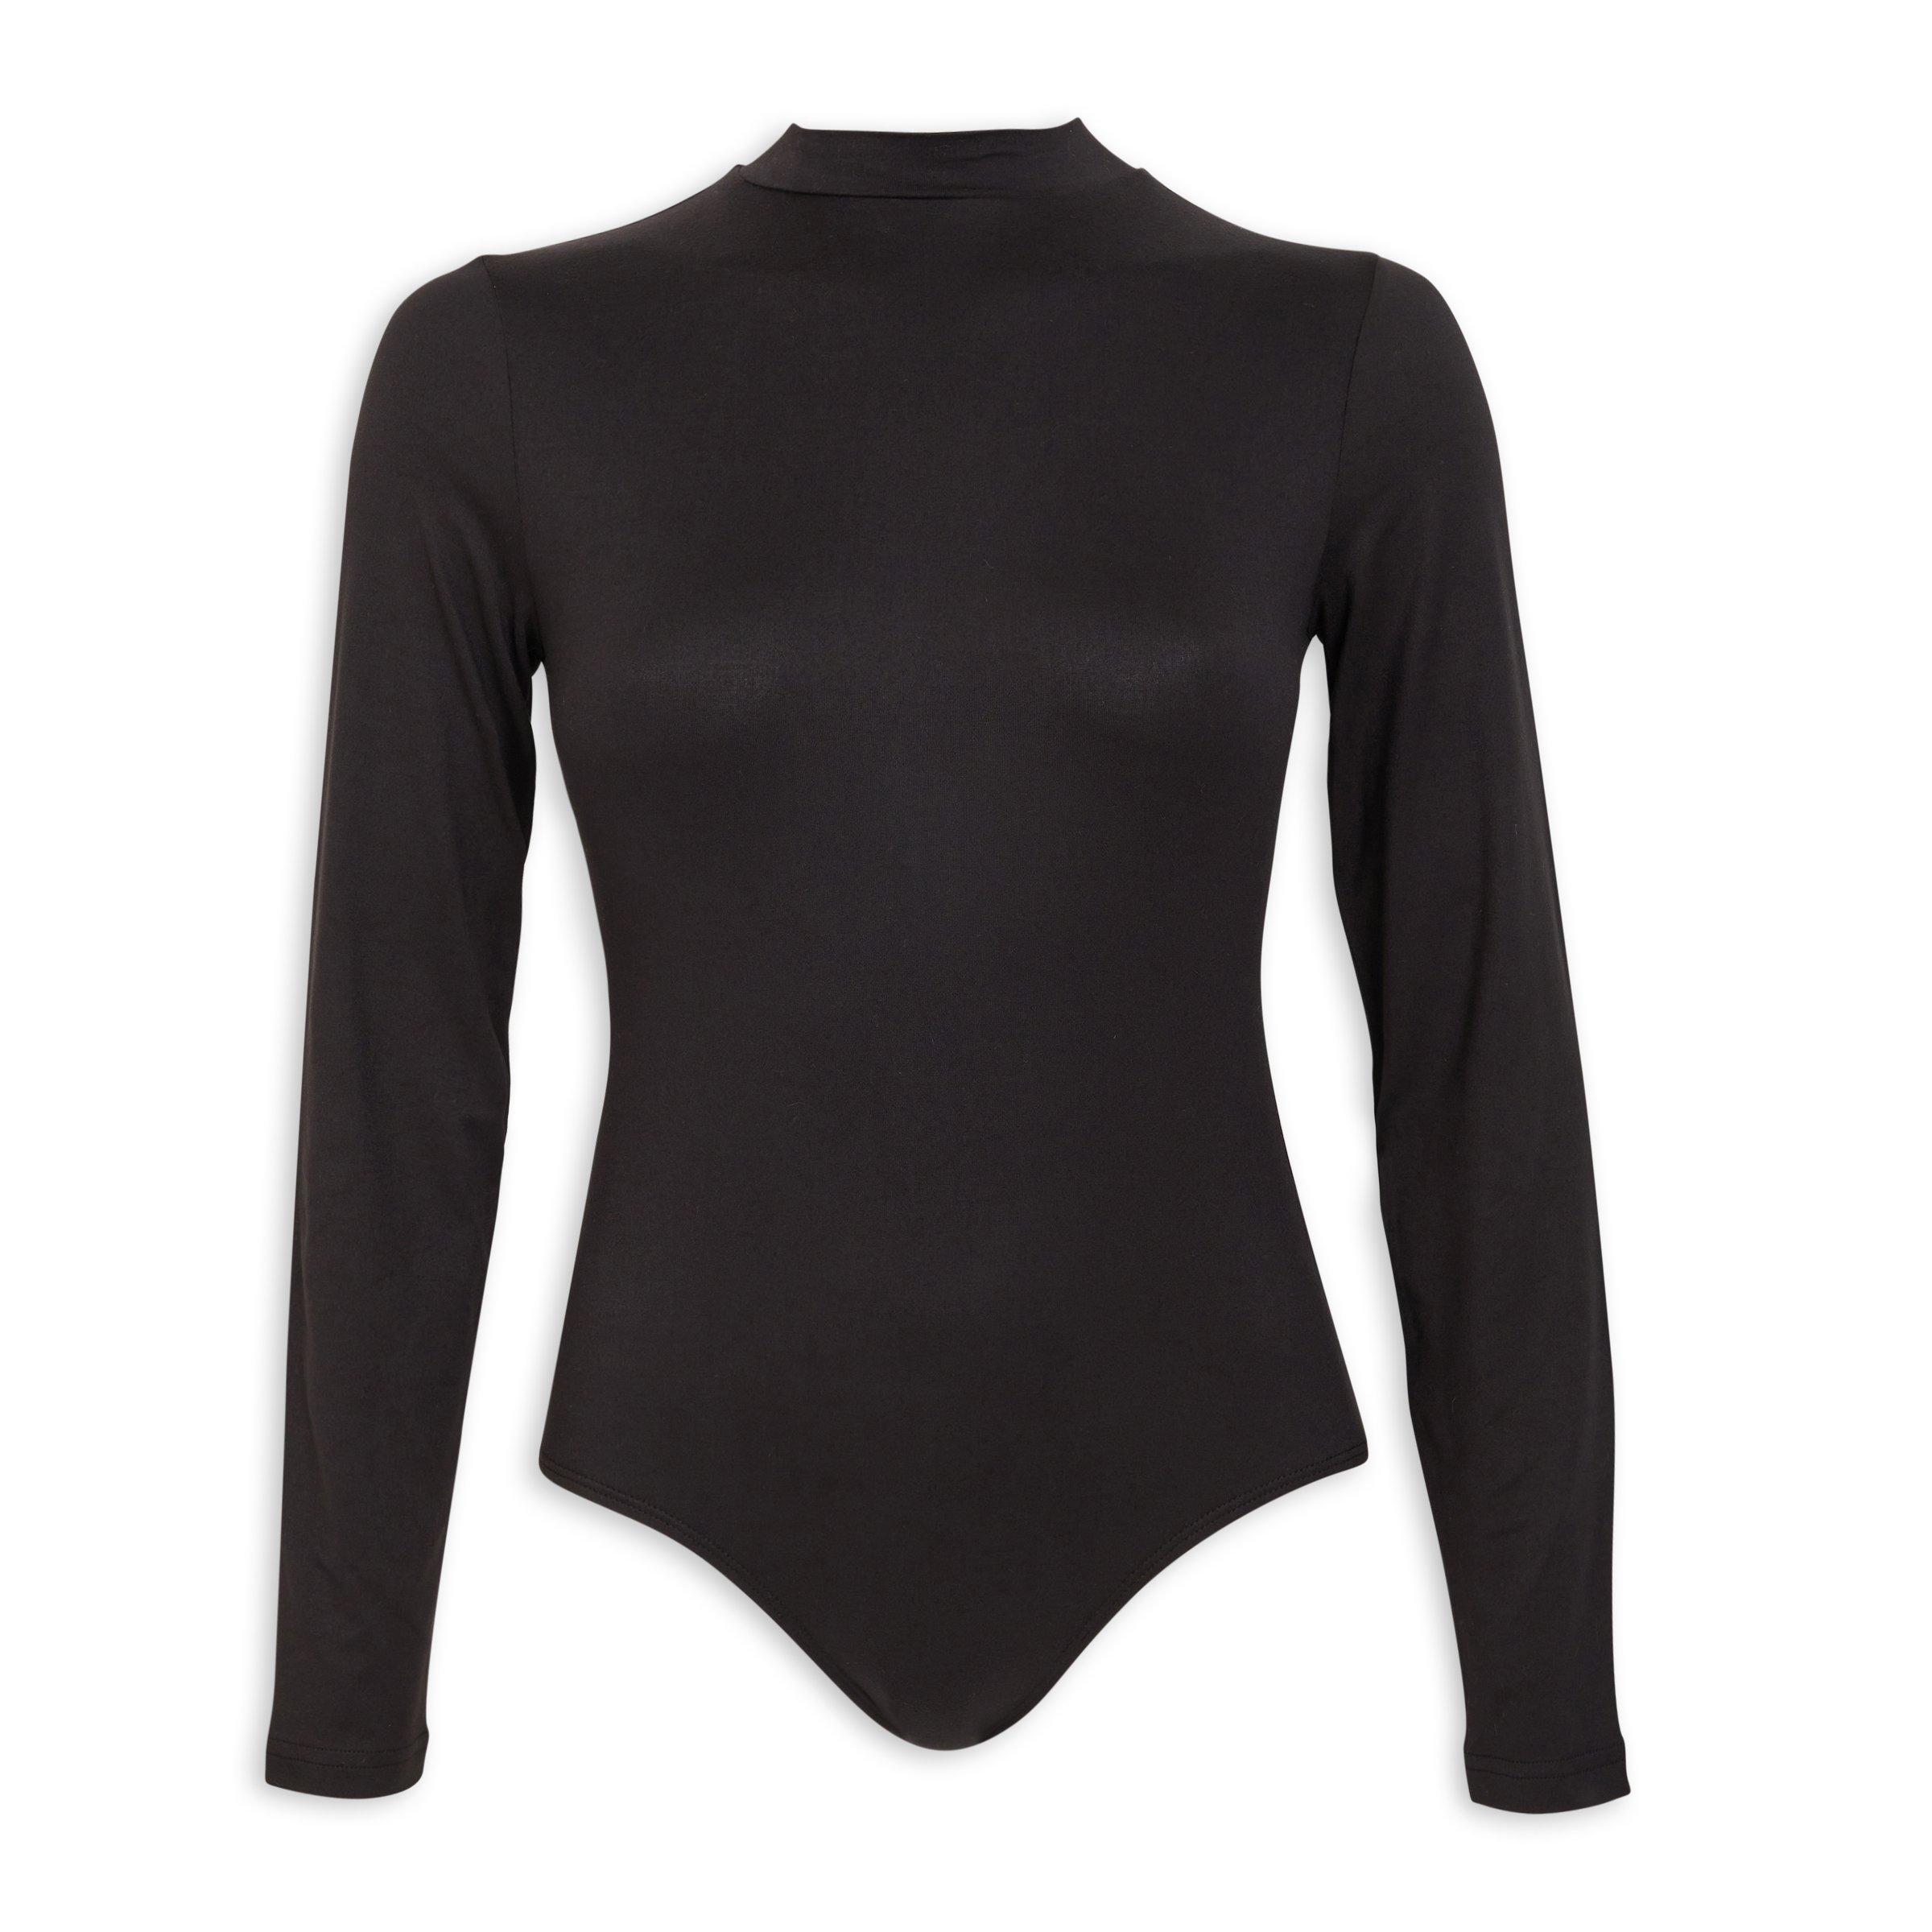 Inwear Black Bodysuit (3105049) | Truworths.co.za